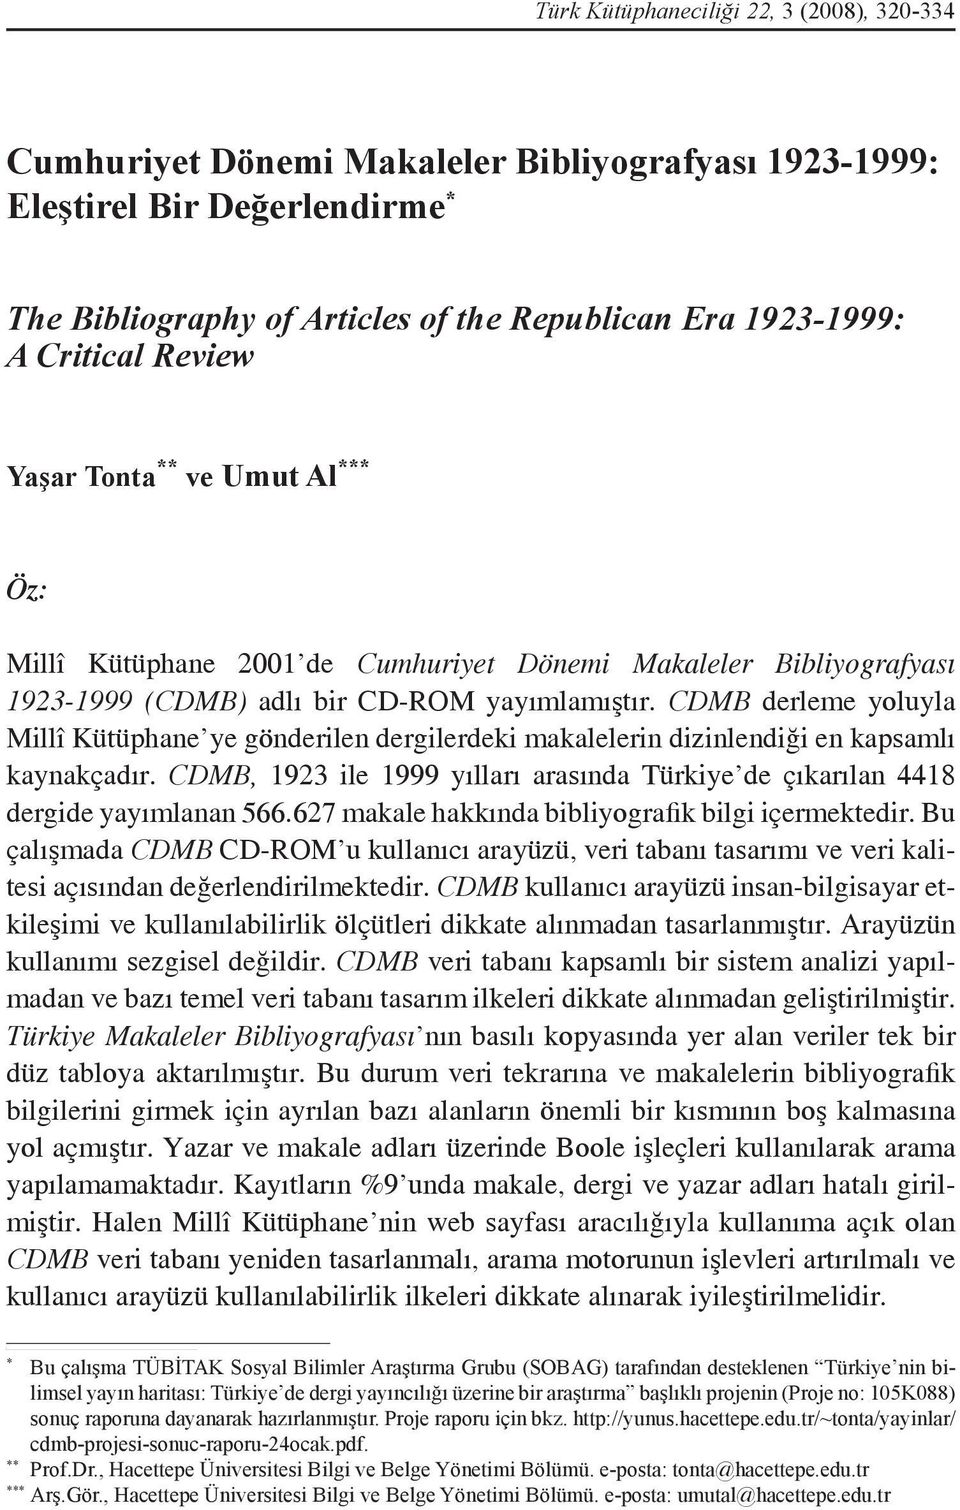 CDMB derleme yoluyla Millî Kütüphane ye gönderilen dergilerdeki makalelerin dizinlendiği en kapsamlı kaynakçadır. CDMB, 1923 ile 1999 yılları arasında Türkiye de çıkarılan 4418 dergide yayımlanan 566.